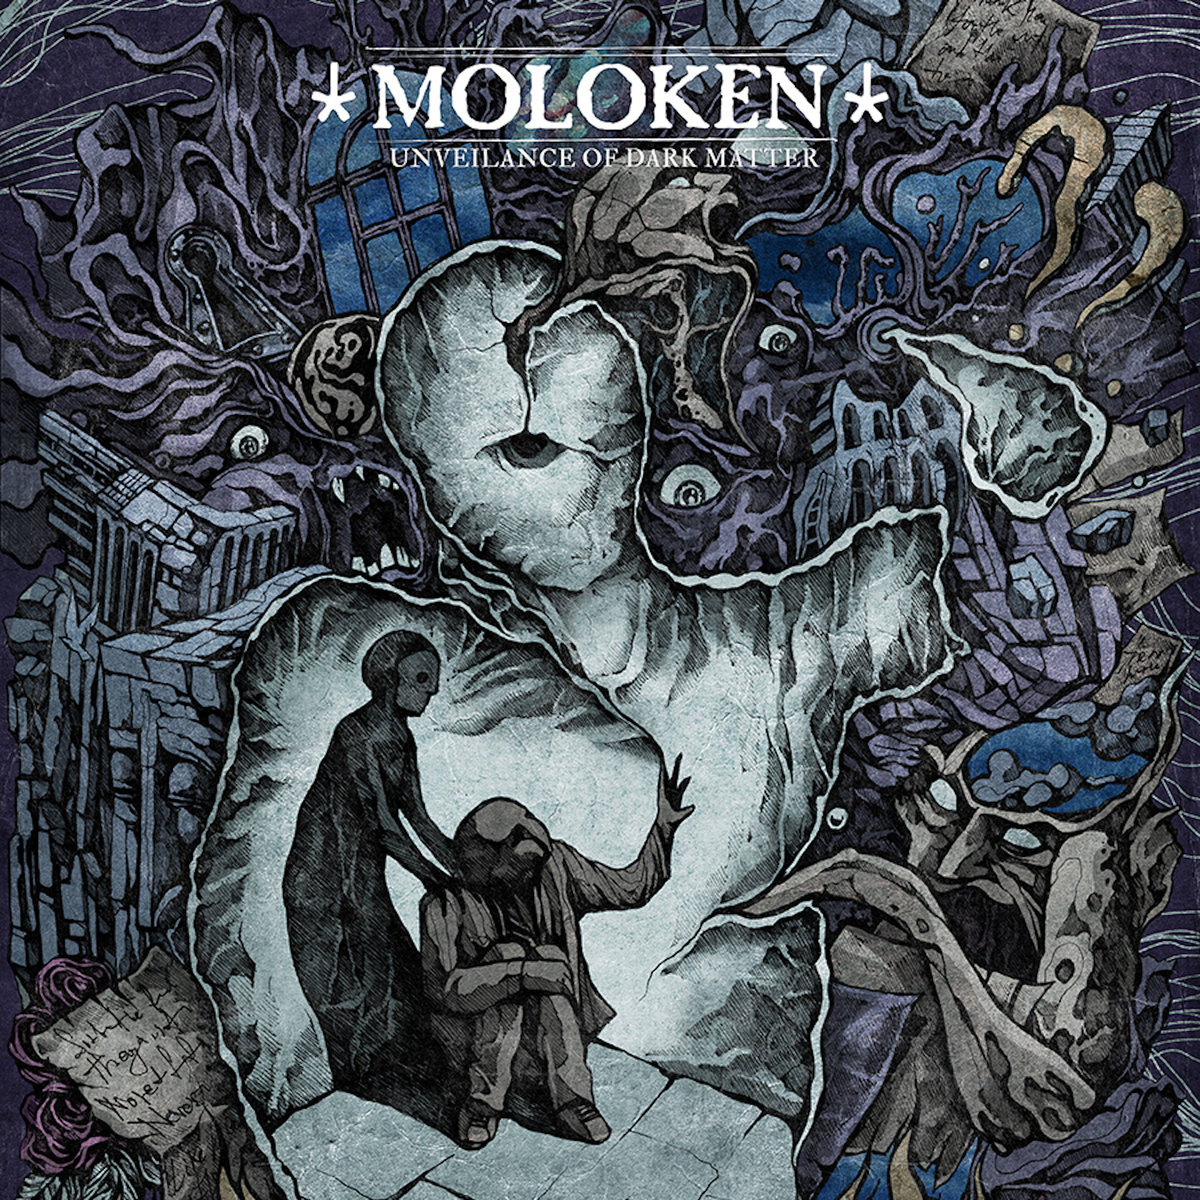 Moloken